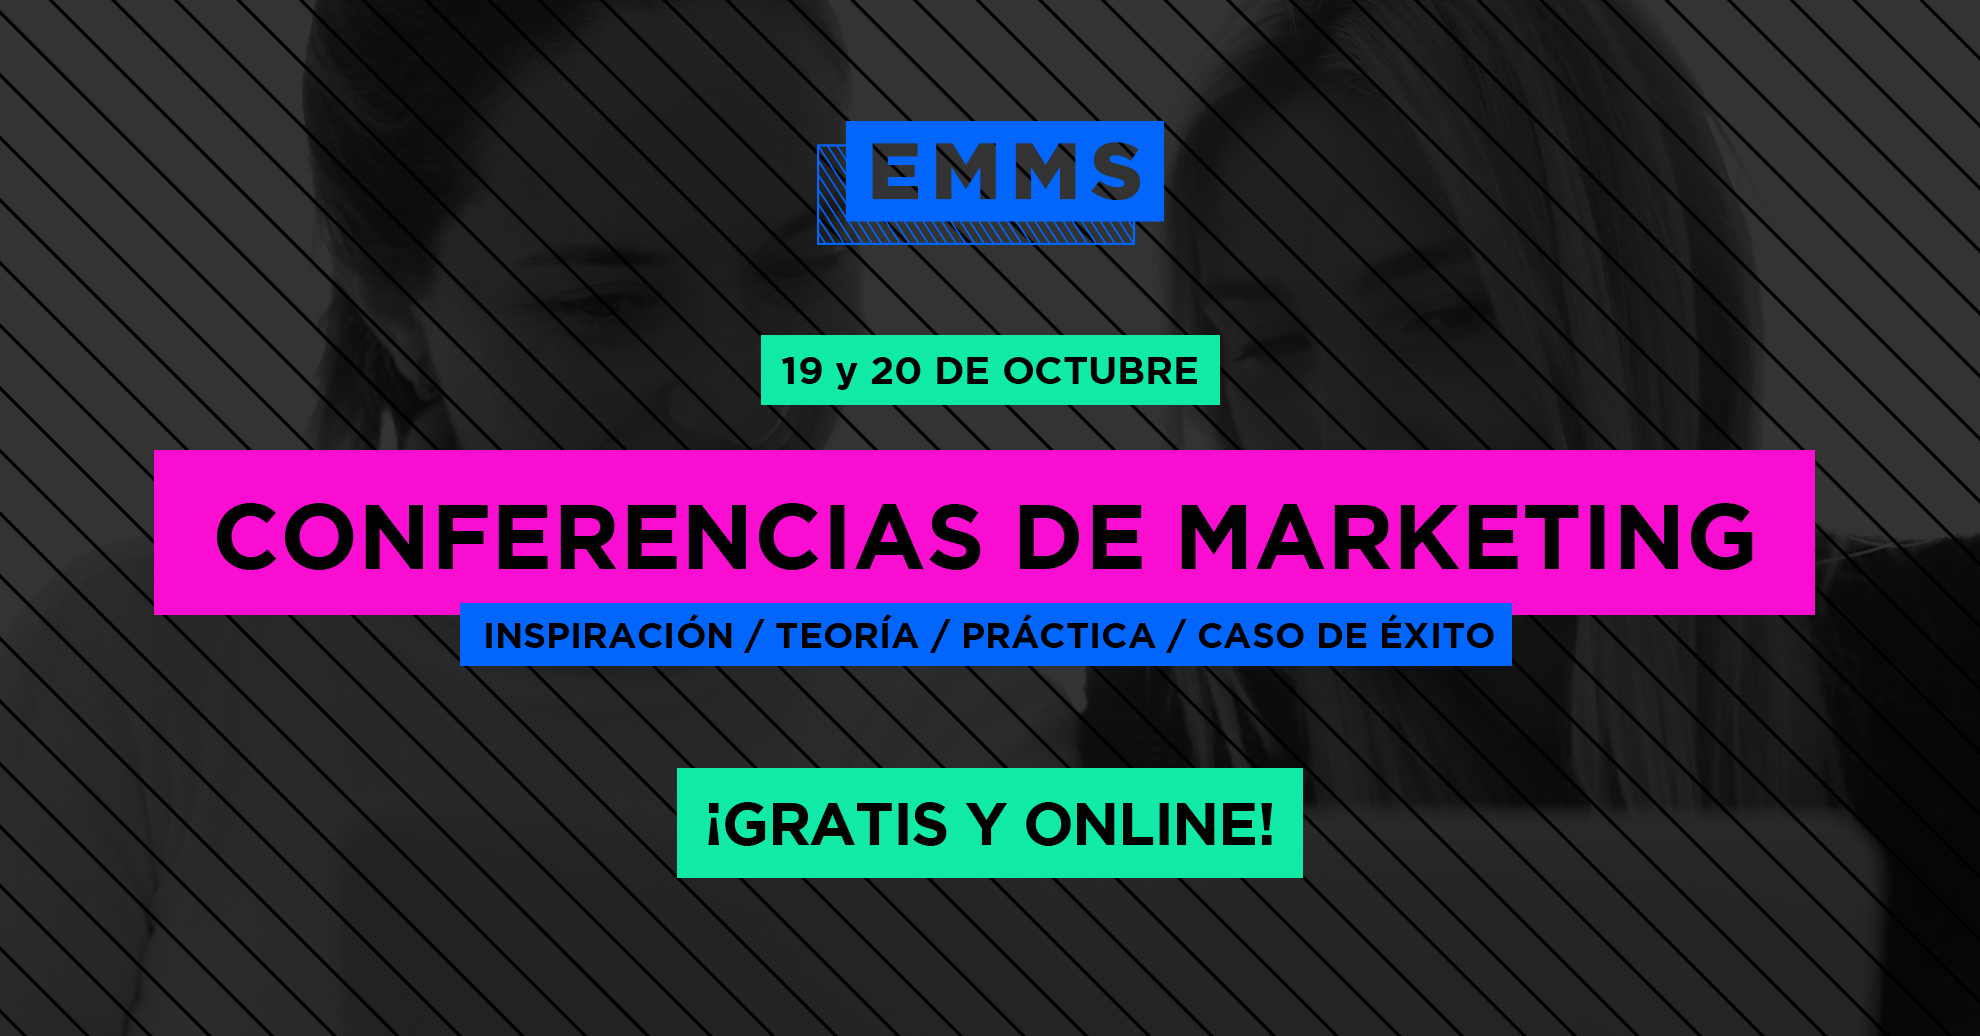 EMMS 2017: Conferencias Online